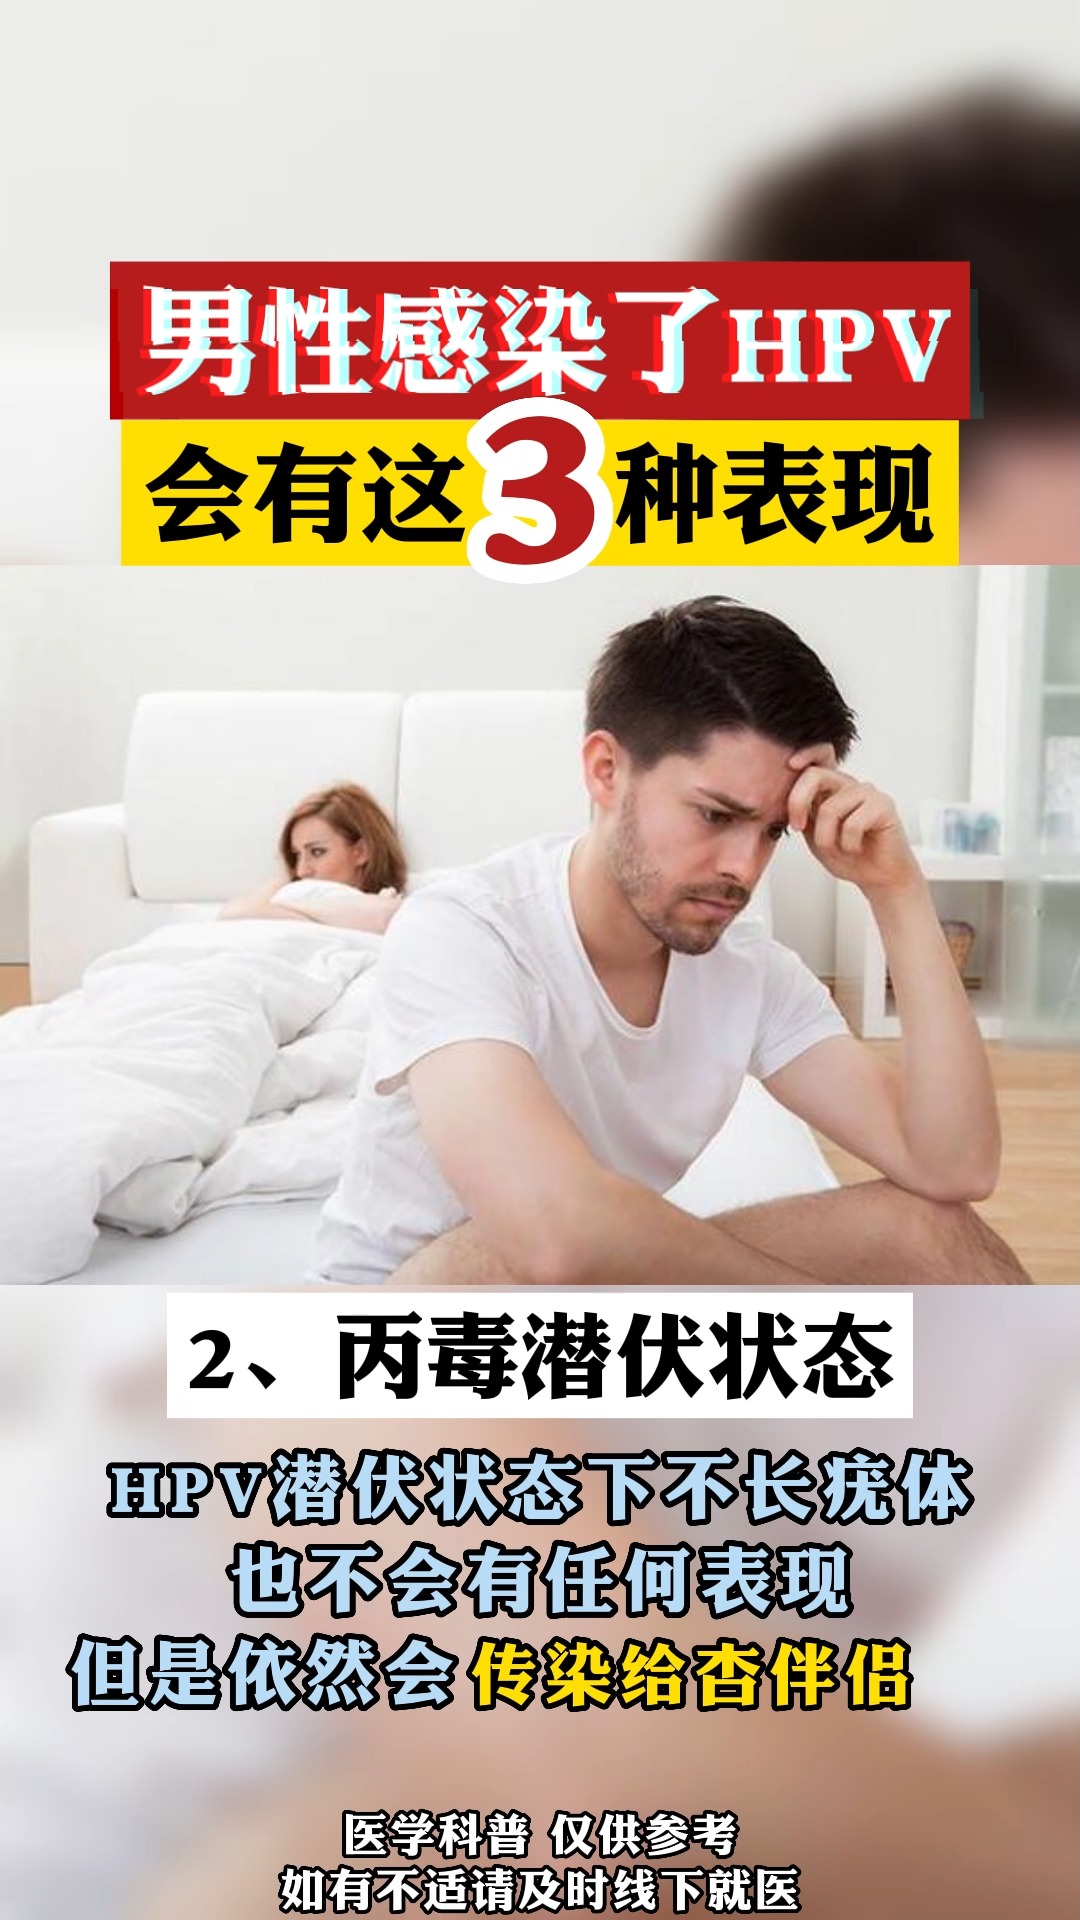 香港九价hpv疫苗男性感染了hpv会有这3种表现